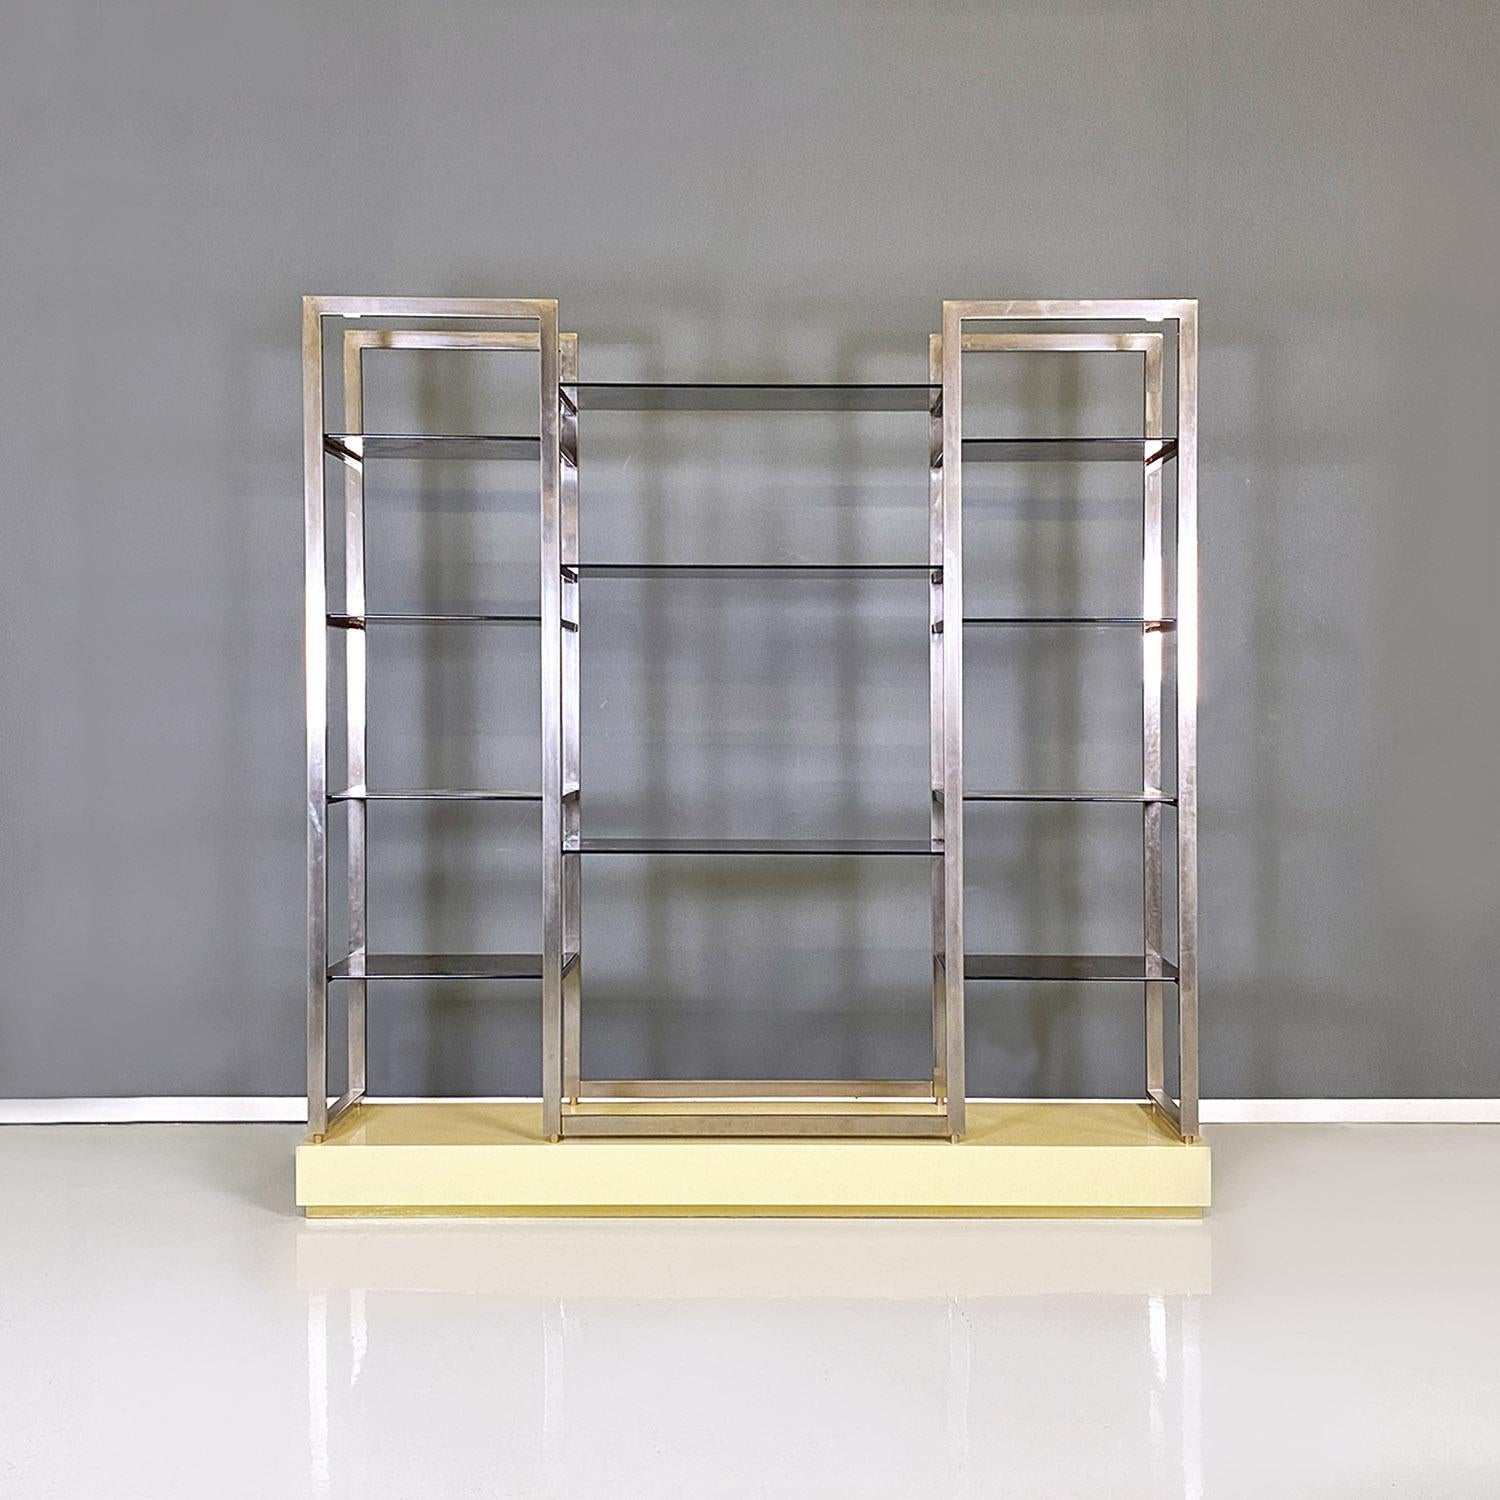 Französische Moderne Rauchglas, Metall und lackiertes Holz Bücherregal von Alain Delon, 1980er Jahre
Selbsttragendes Bodenregal mit rechteckigem Sockel aus cremegelb lackiertem Holz und Messingdetails. Das Bücherregal verfügt über mehrere